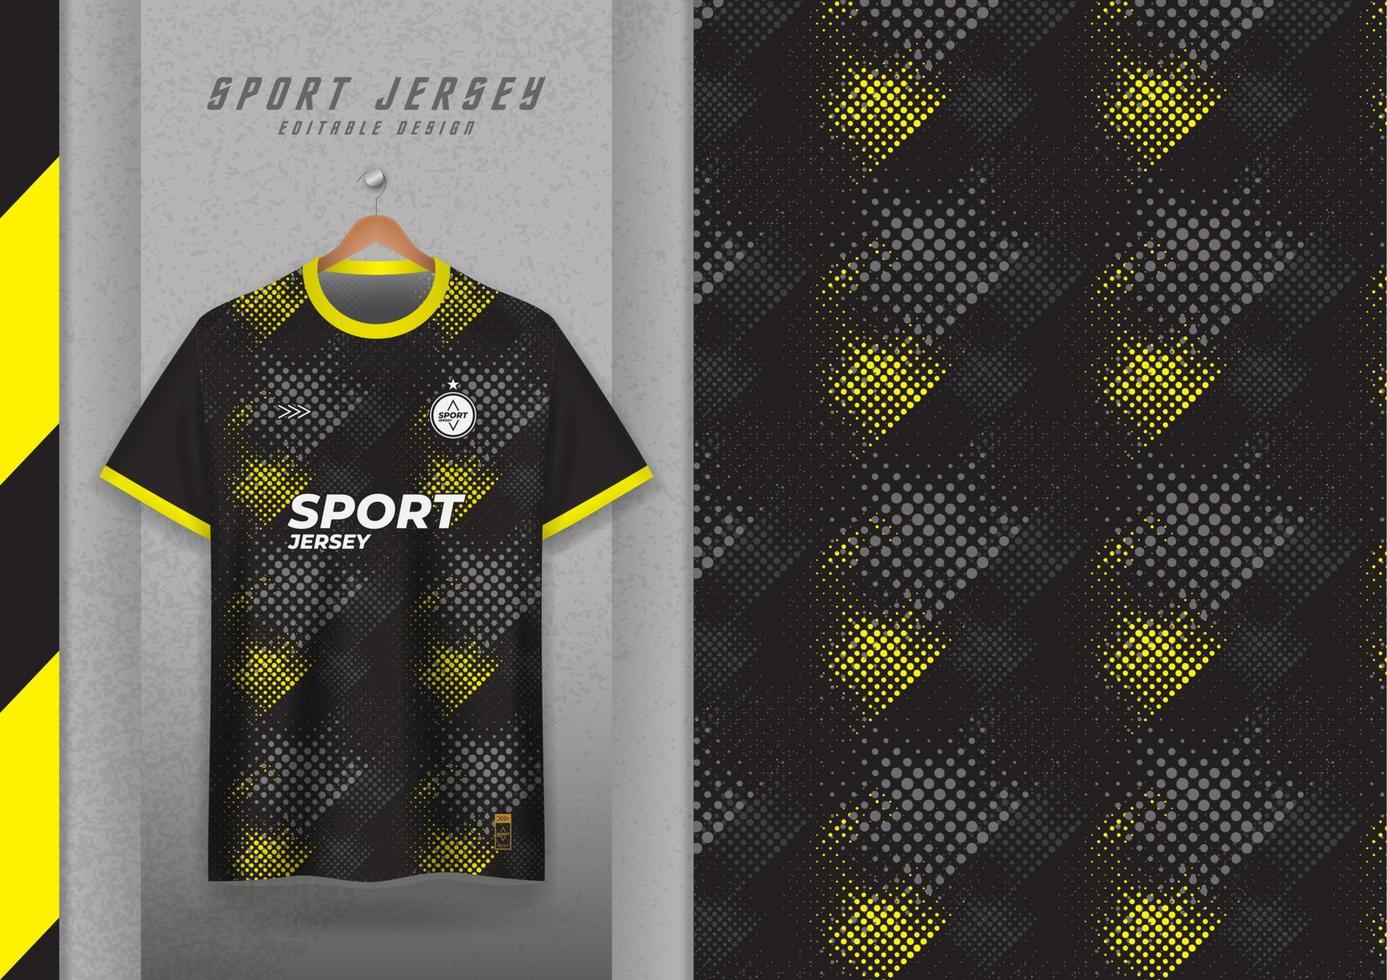 conception de motifs en tissu pour t-shirts de sport, maillots de football, maillots de course, maillots, maillots d'entraînement. motif noir jaune vecteur